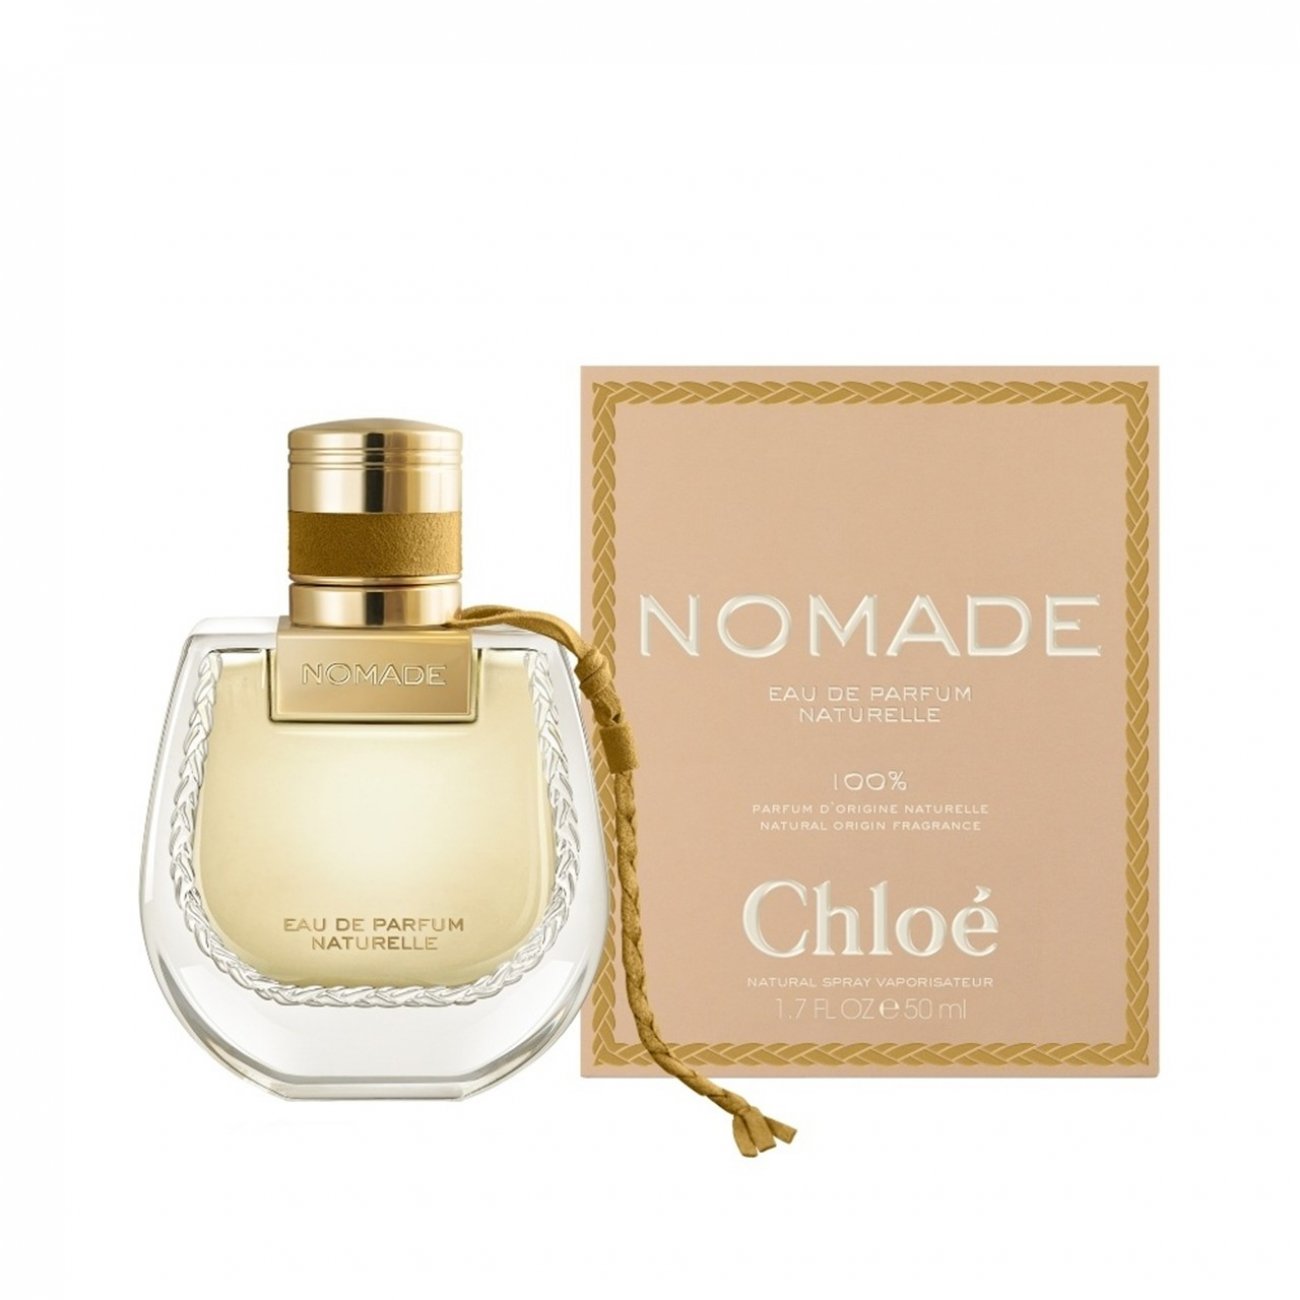 Buy Chloé Nomade Eau de Parfum Naturelle · Thailand